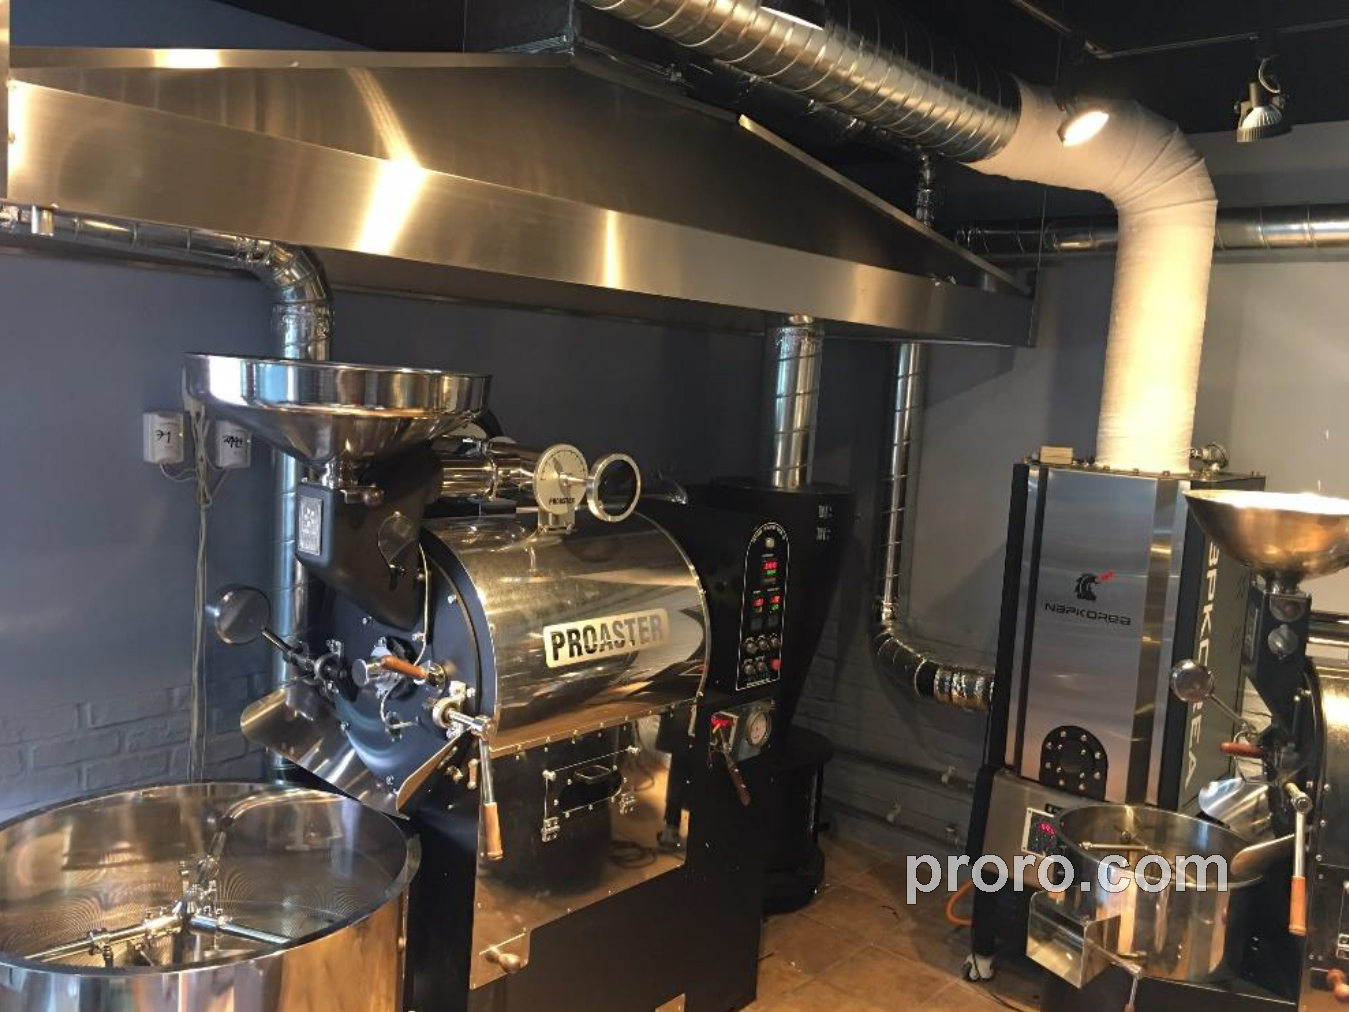 PROASTER 泰焕咖啡烘焙机 消烟除味 后燃机 安装案例 - CAFE MUDI咖啡工作室。